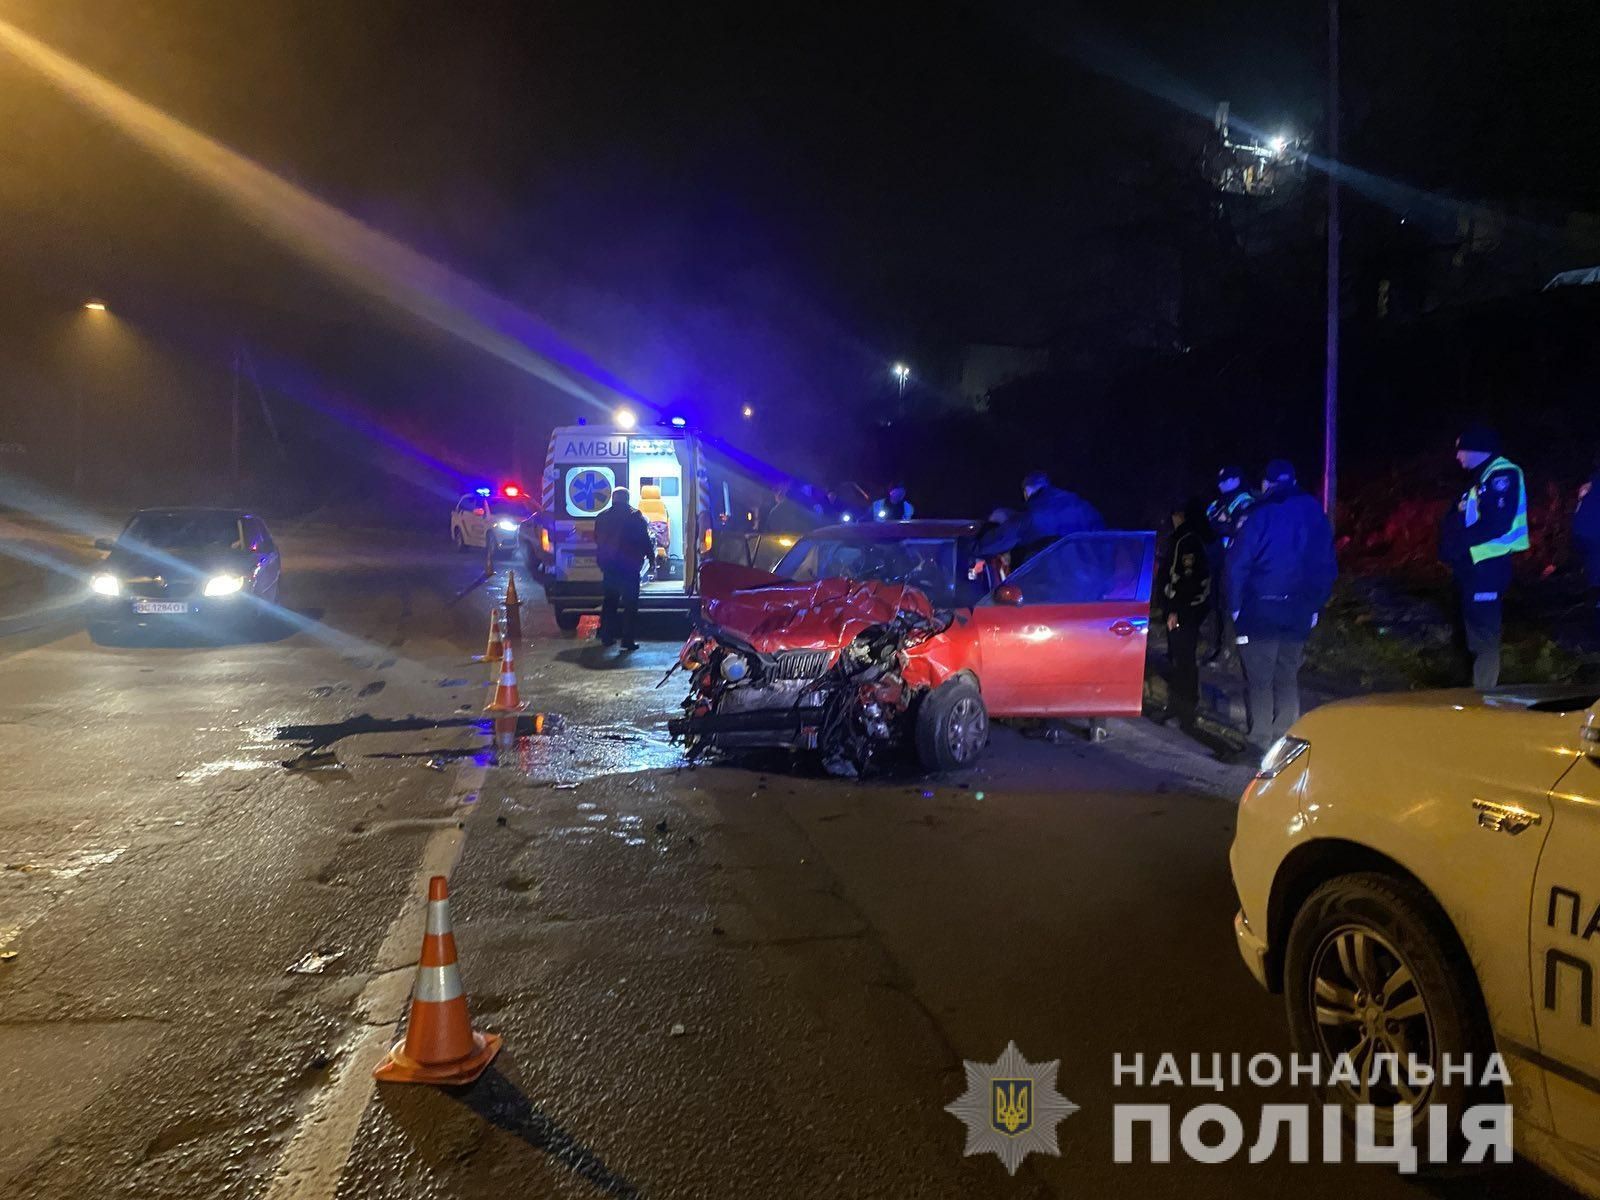 Авто разбило вдребезги: Lexus и Skoda столкнулись на встречной во Львове